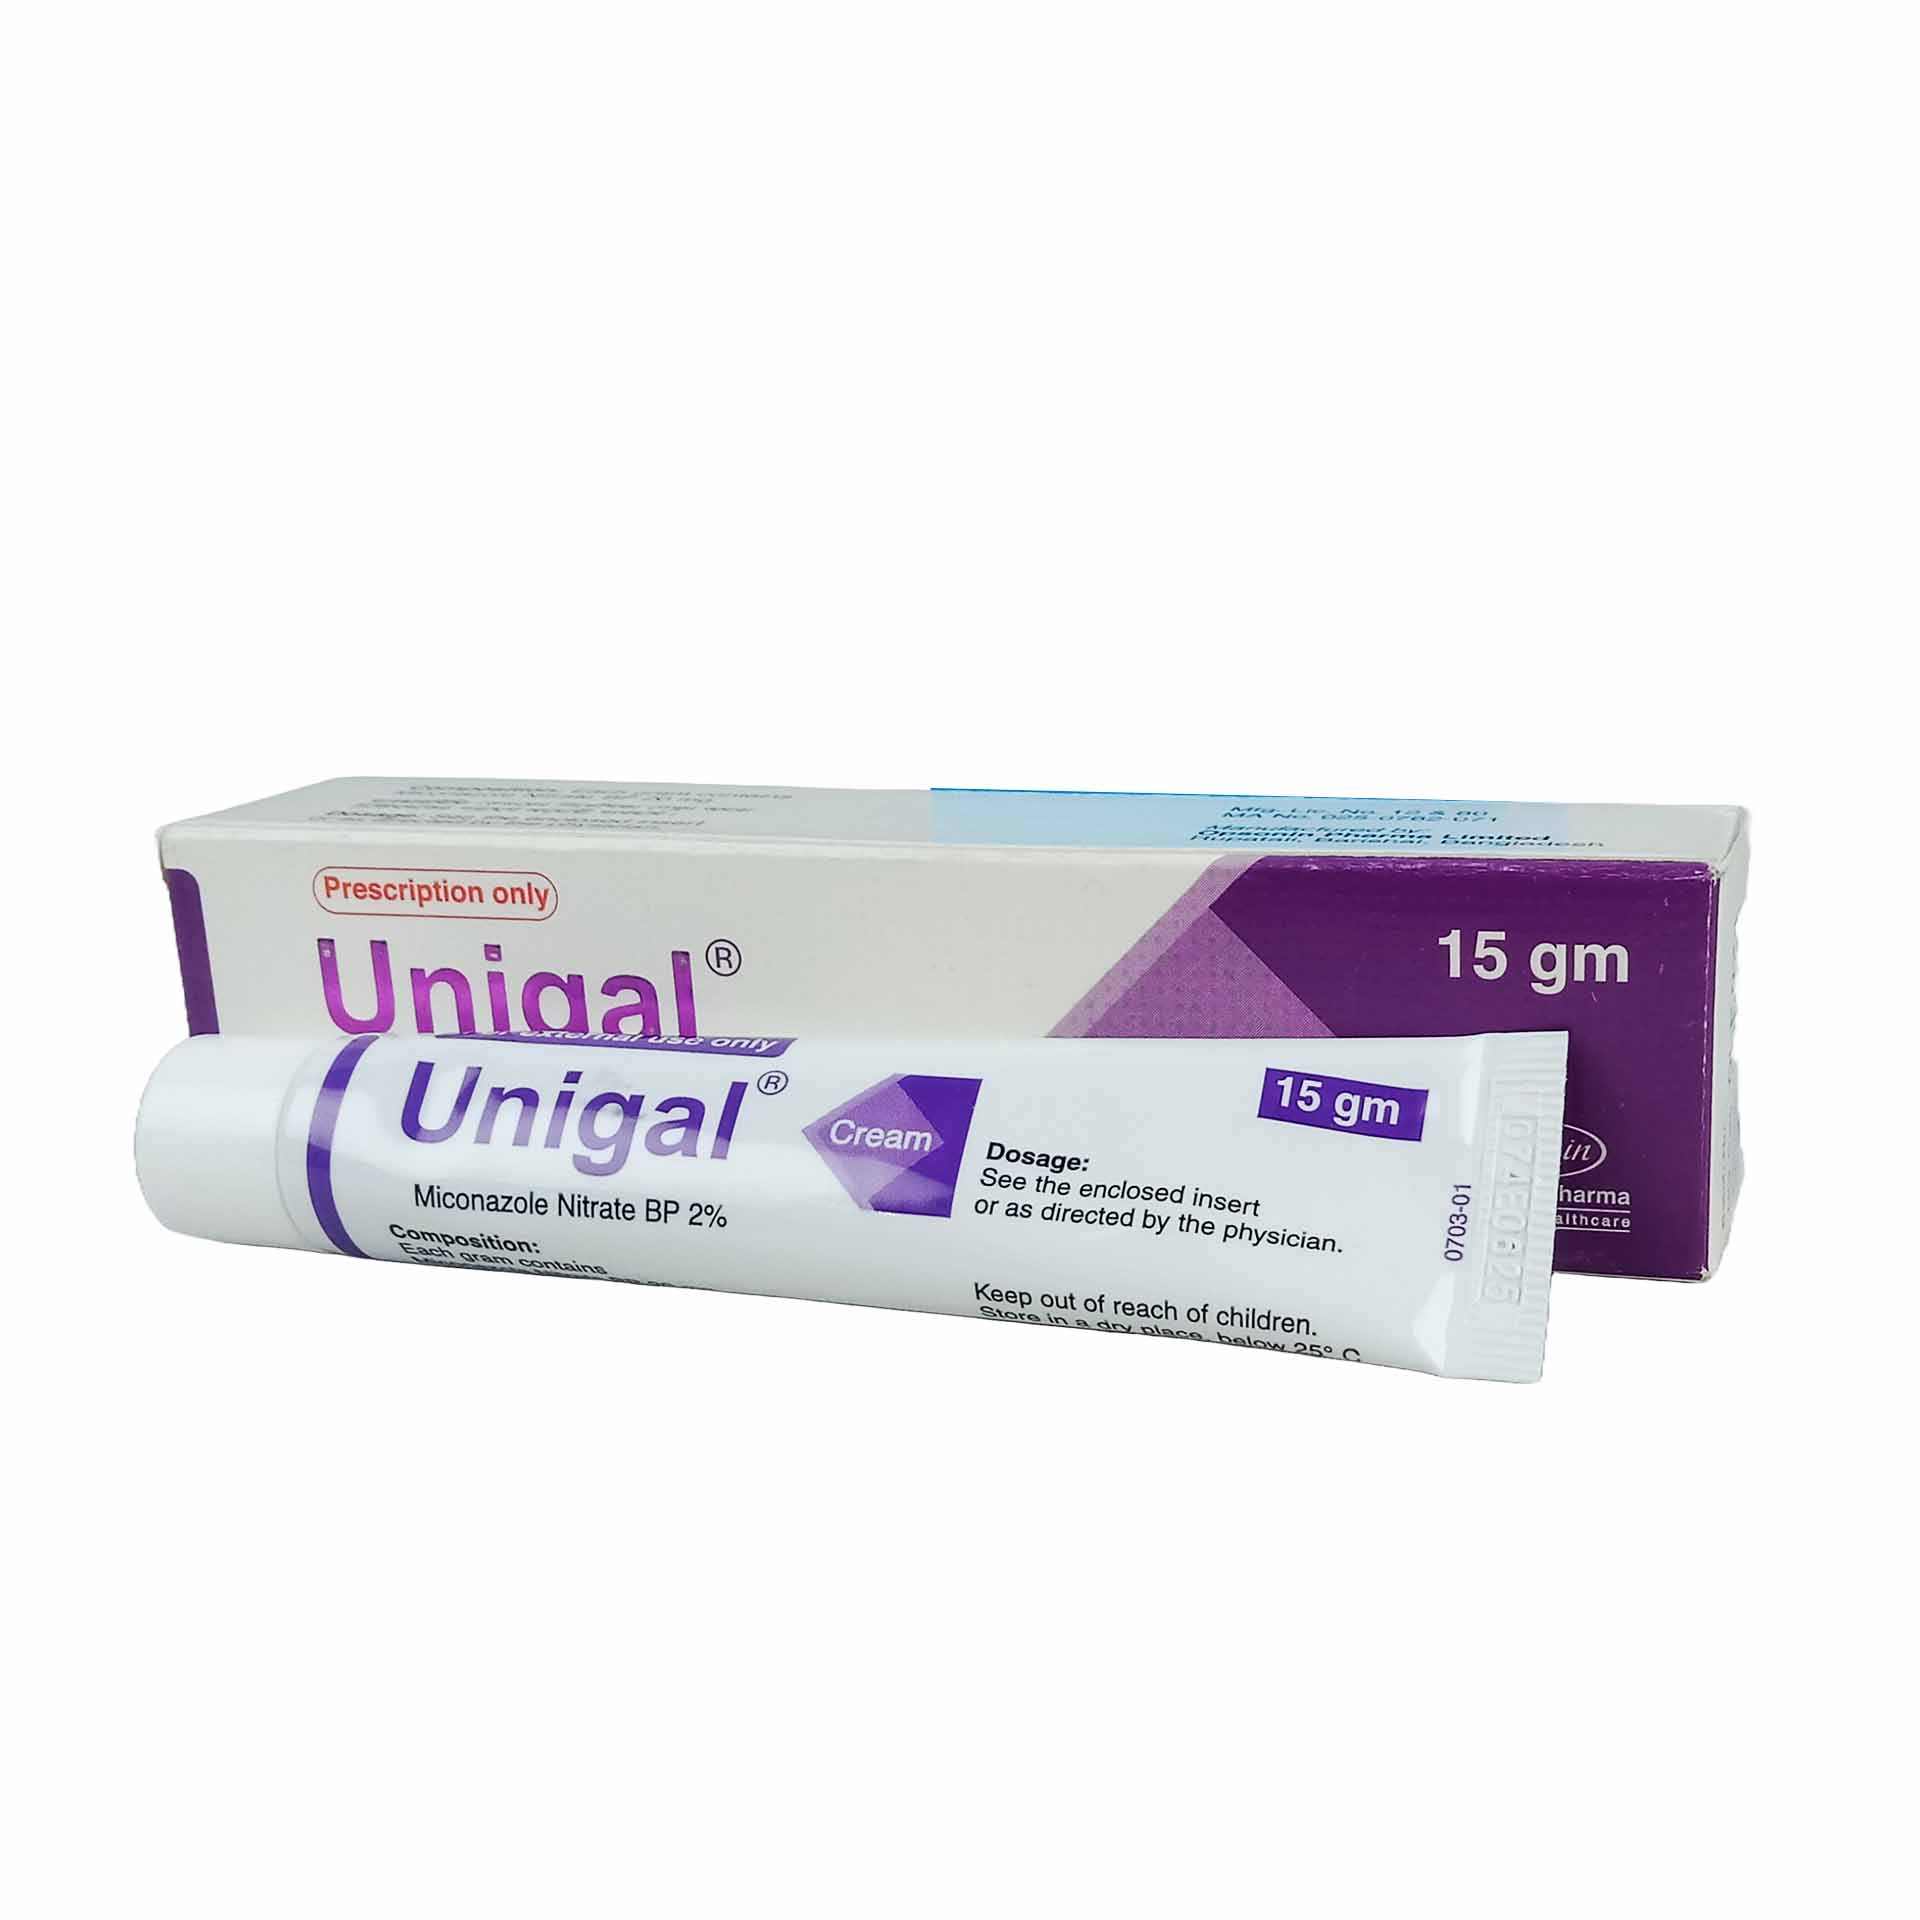 Unigal Cream 15gm 2% cream